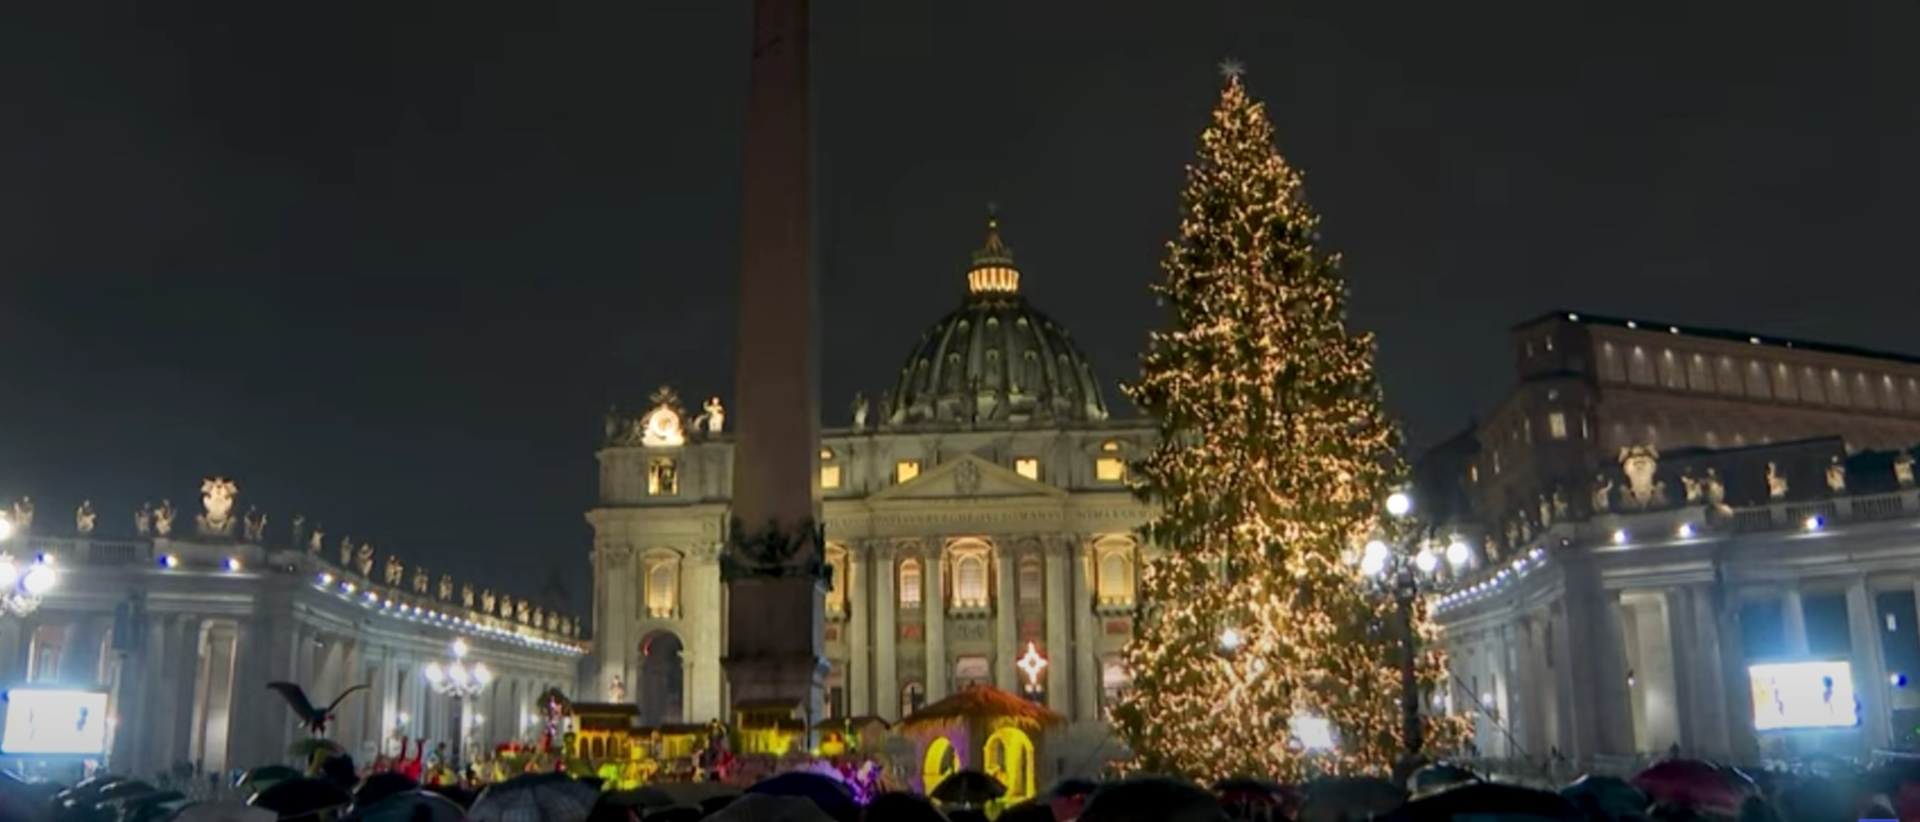 Weihnachtsbaum im Vatikan.